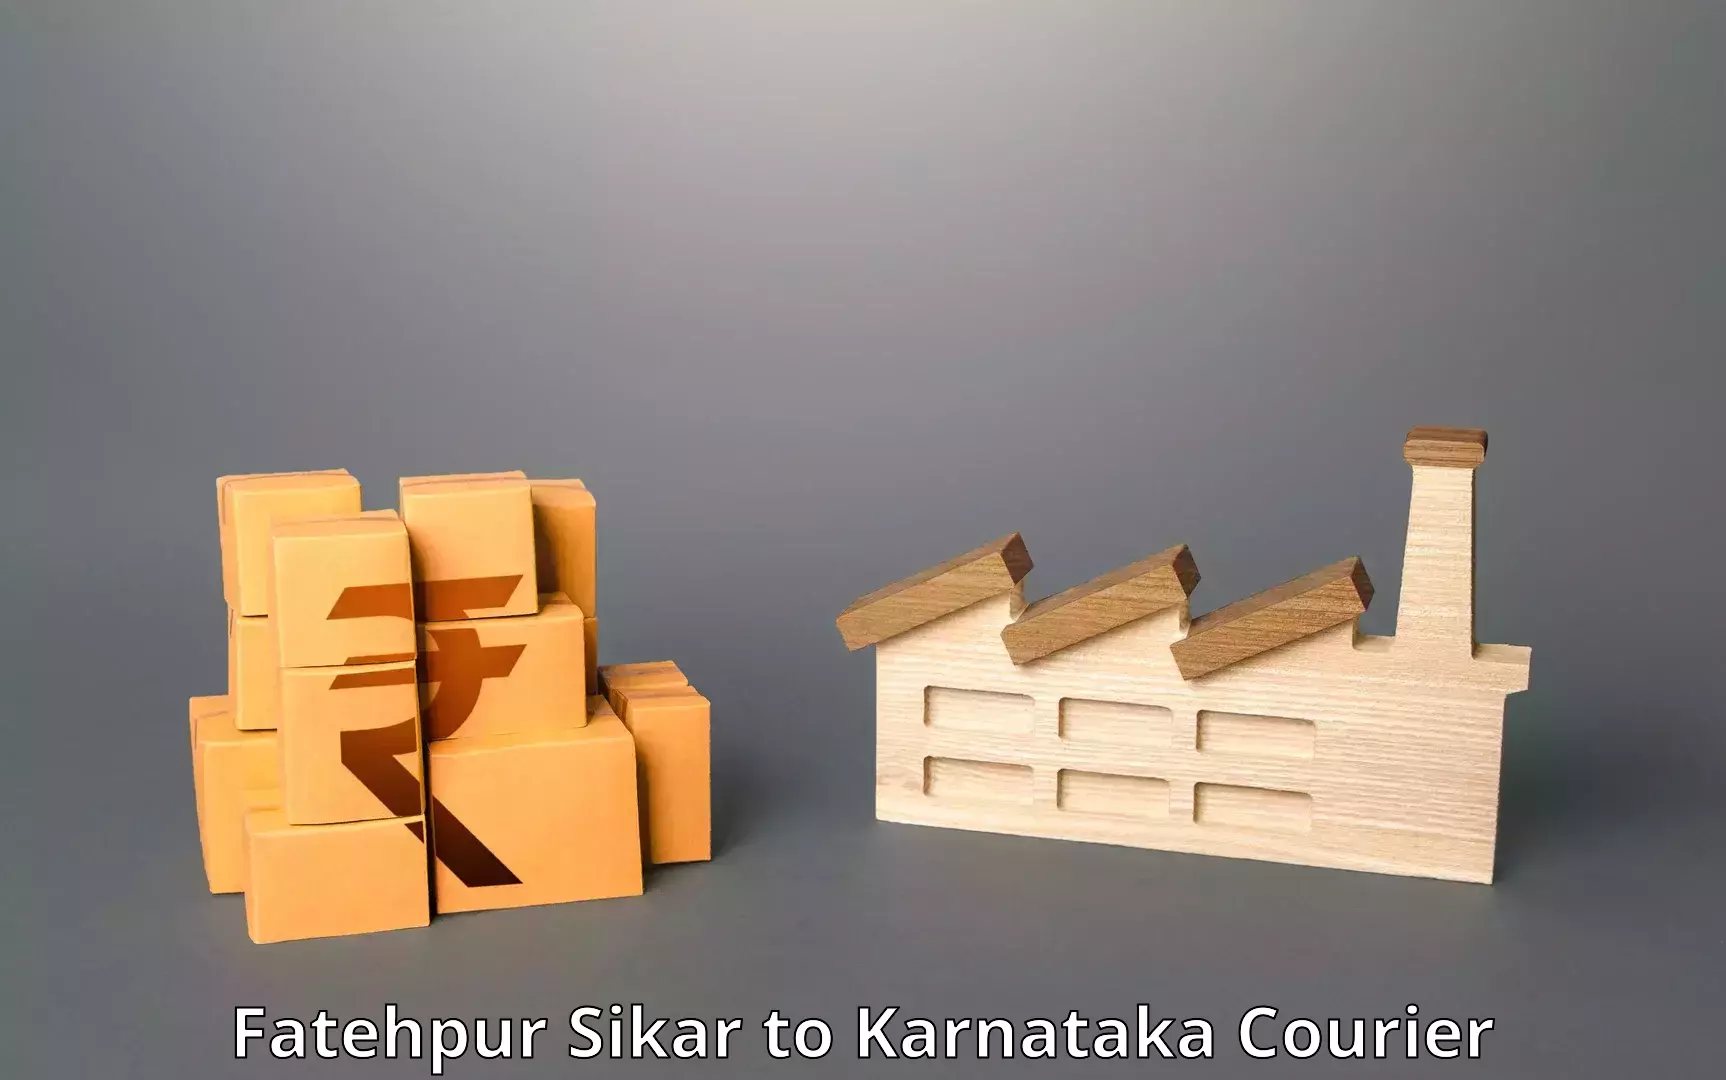 International shipping Fatehpur Sikar to Karnataka